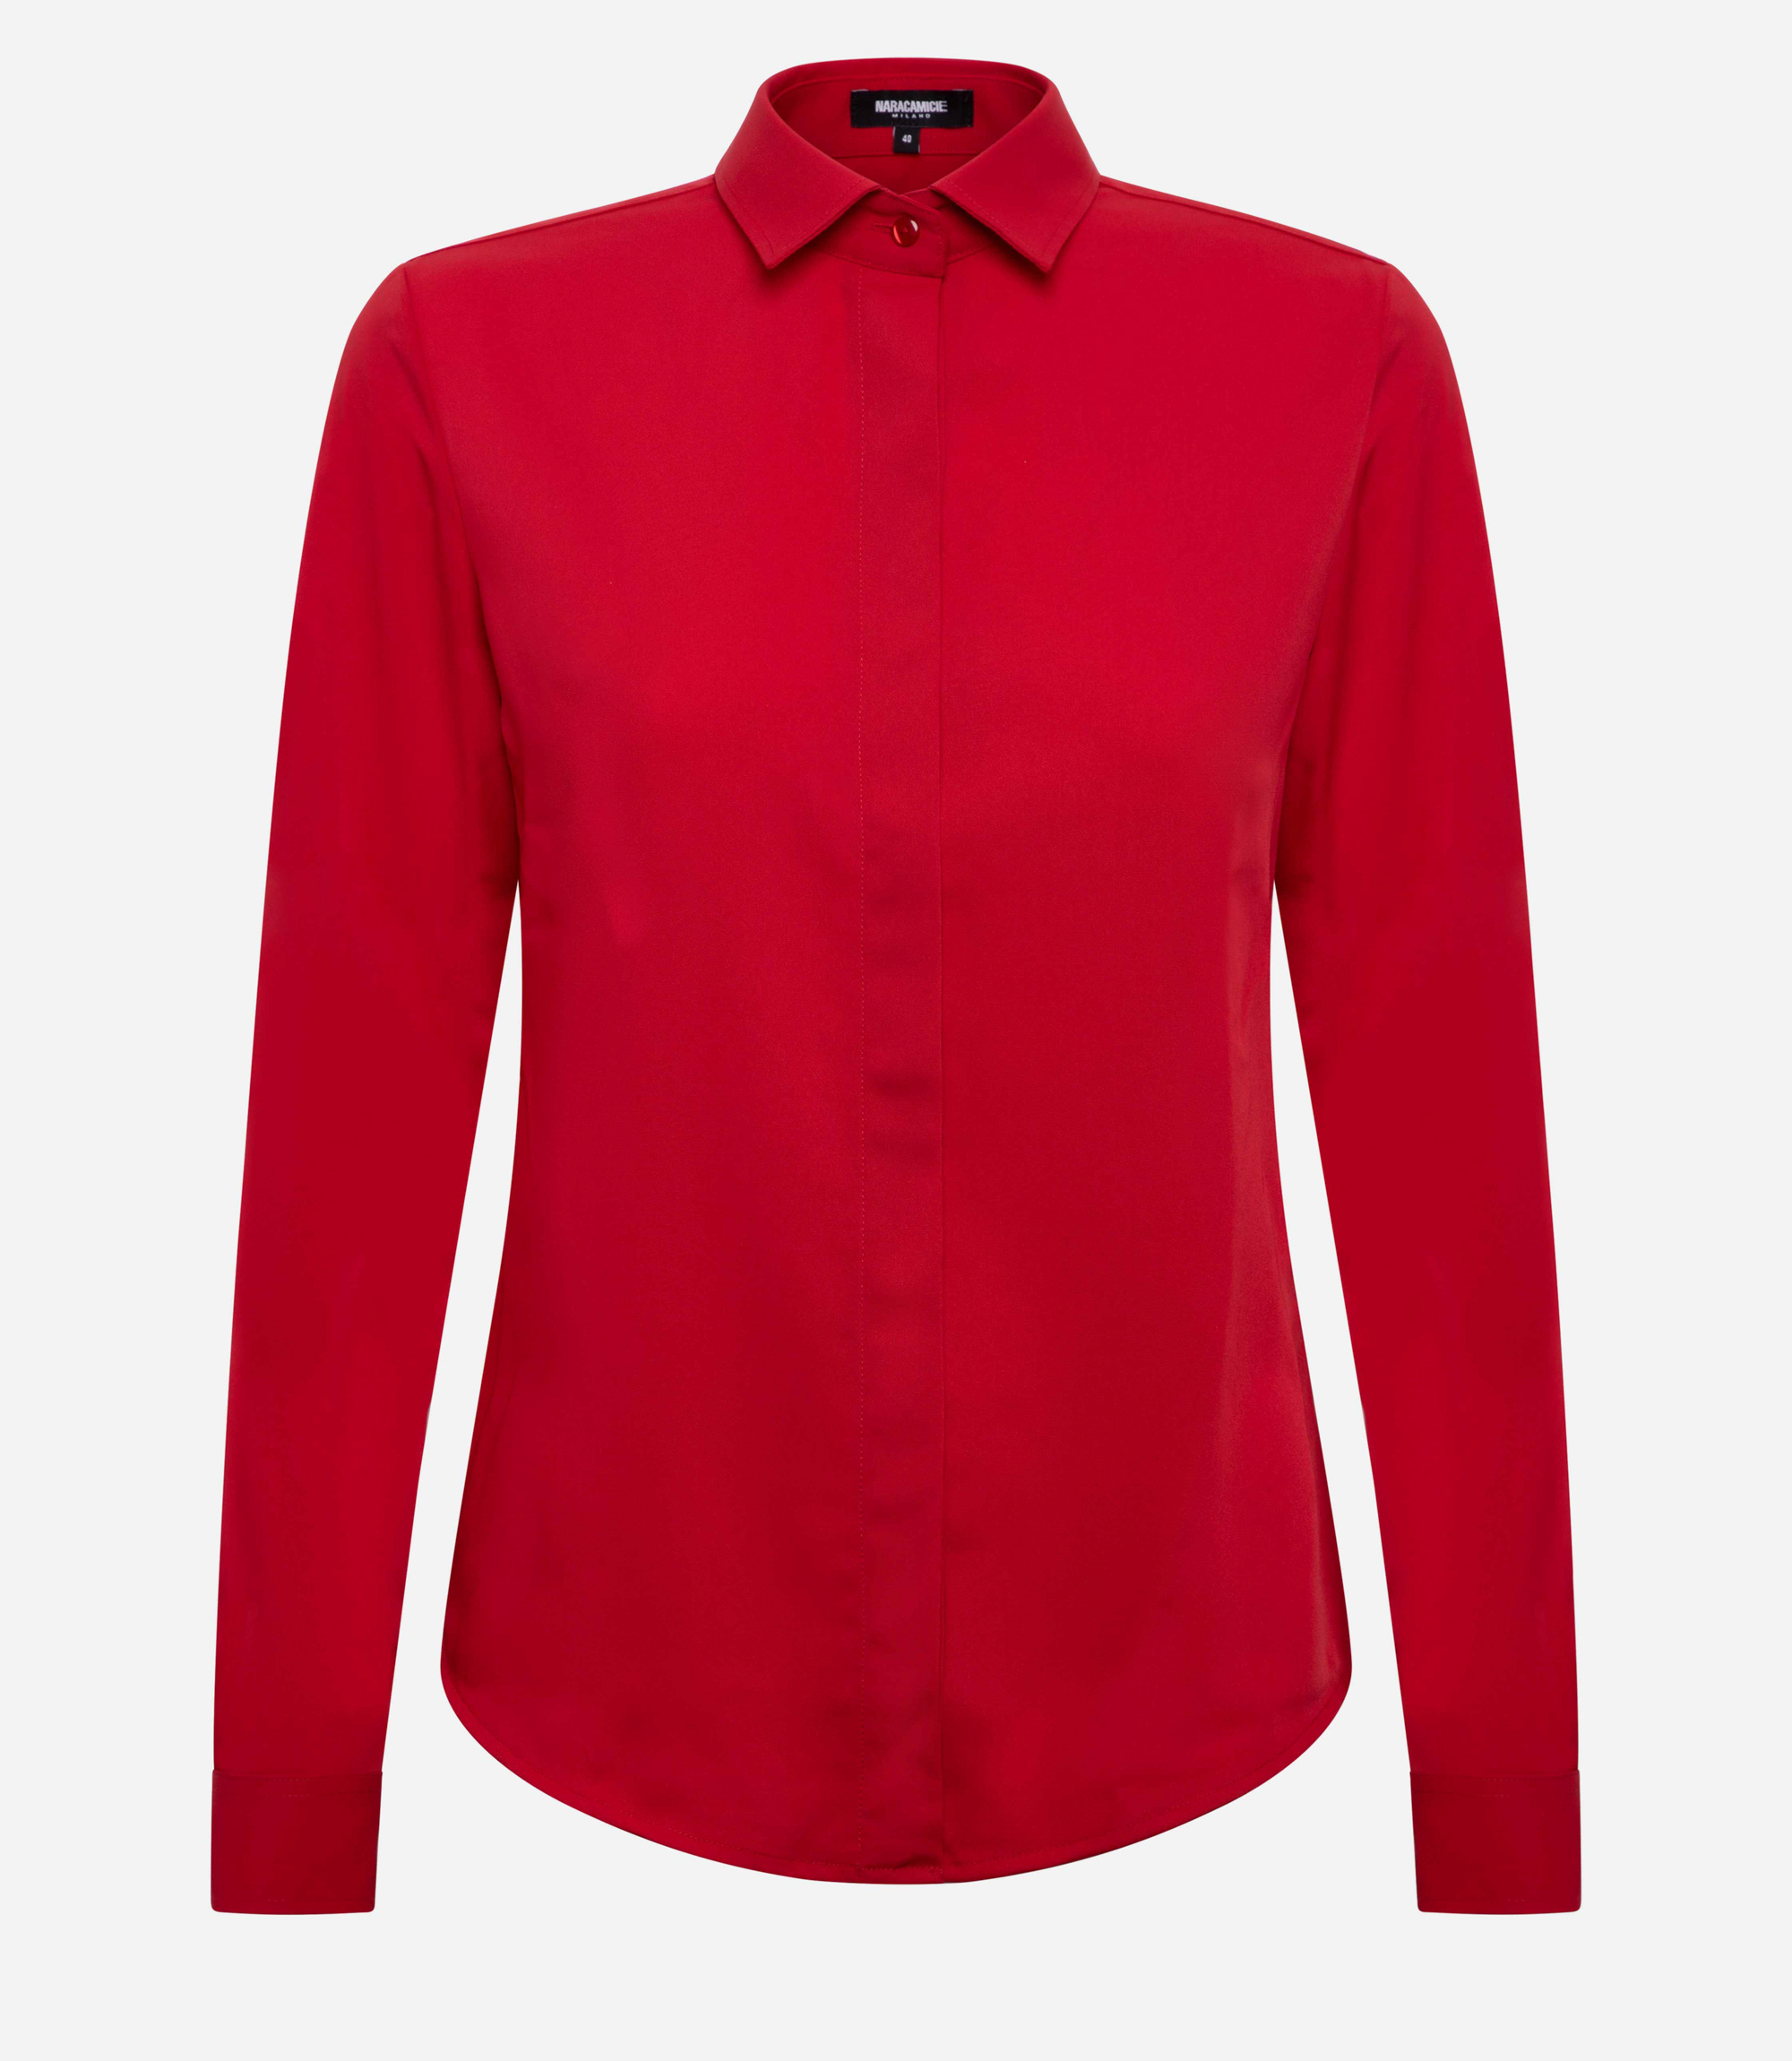 Women's shirt - Red - NaraMilano